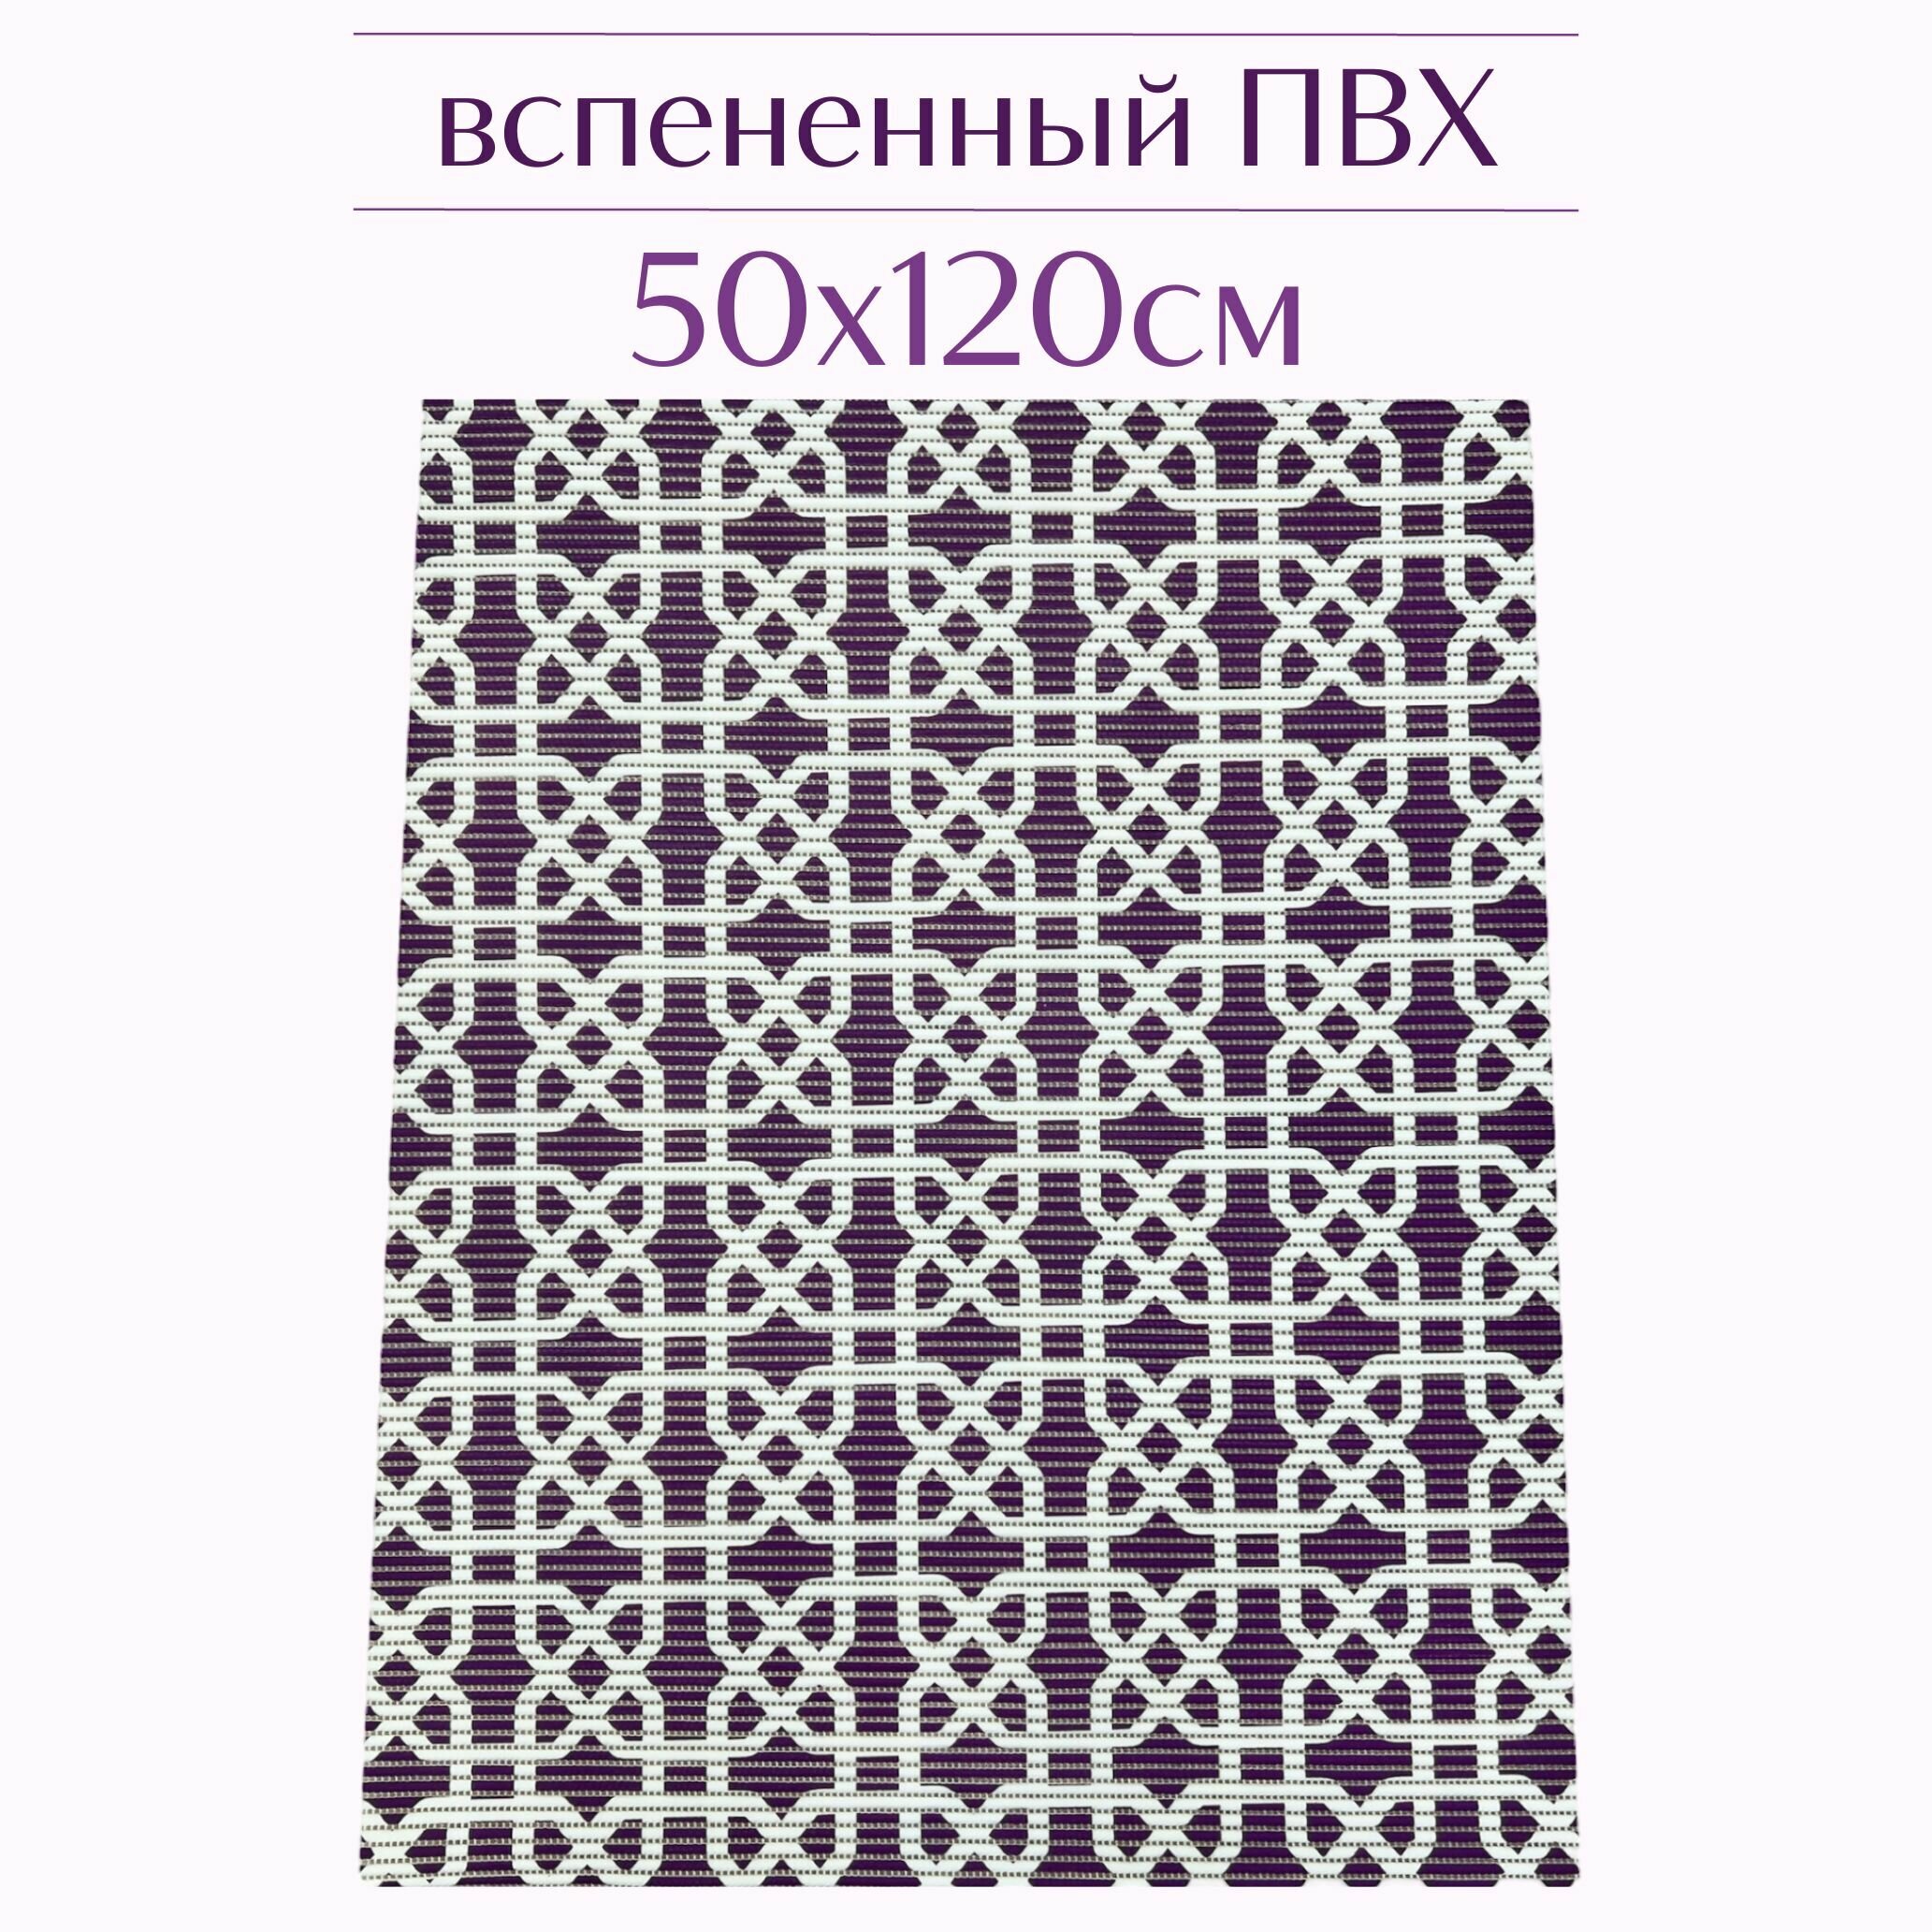 Напольный коврик для ванной из вспененного ПВХ 50x120 см темно-фиолетовый/белый с рисунком